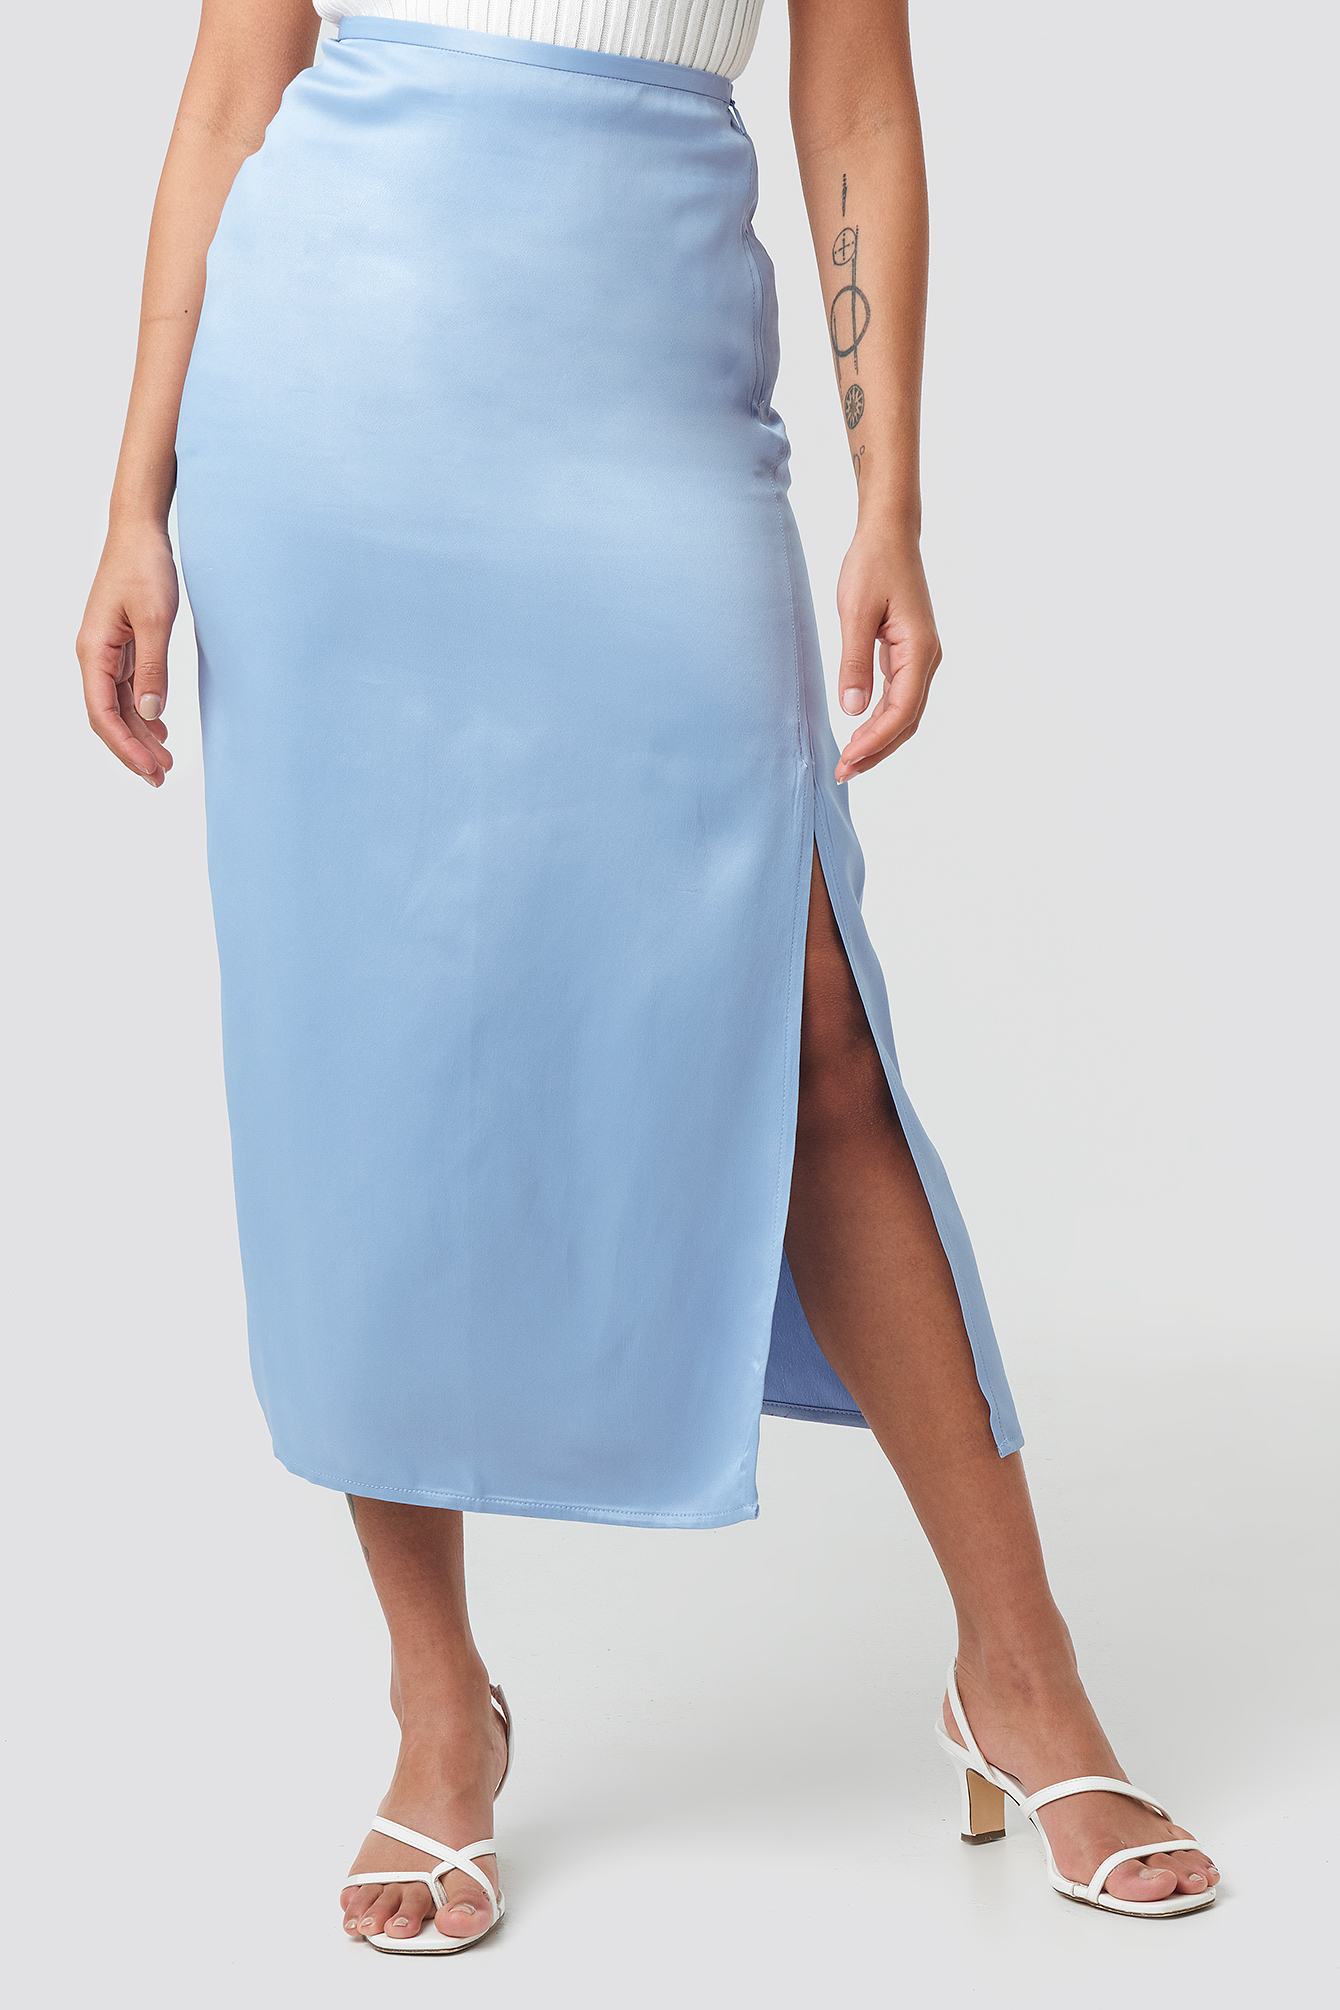 Light Blue Satin Skirt